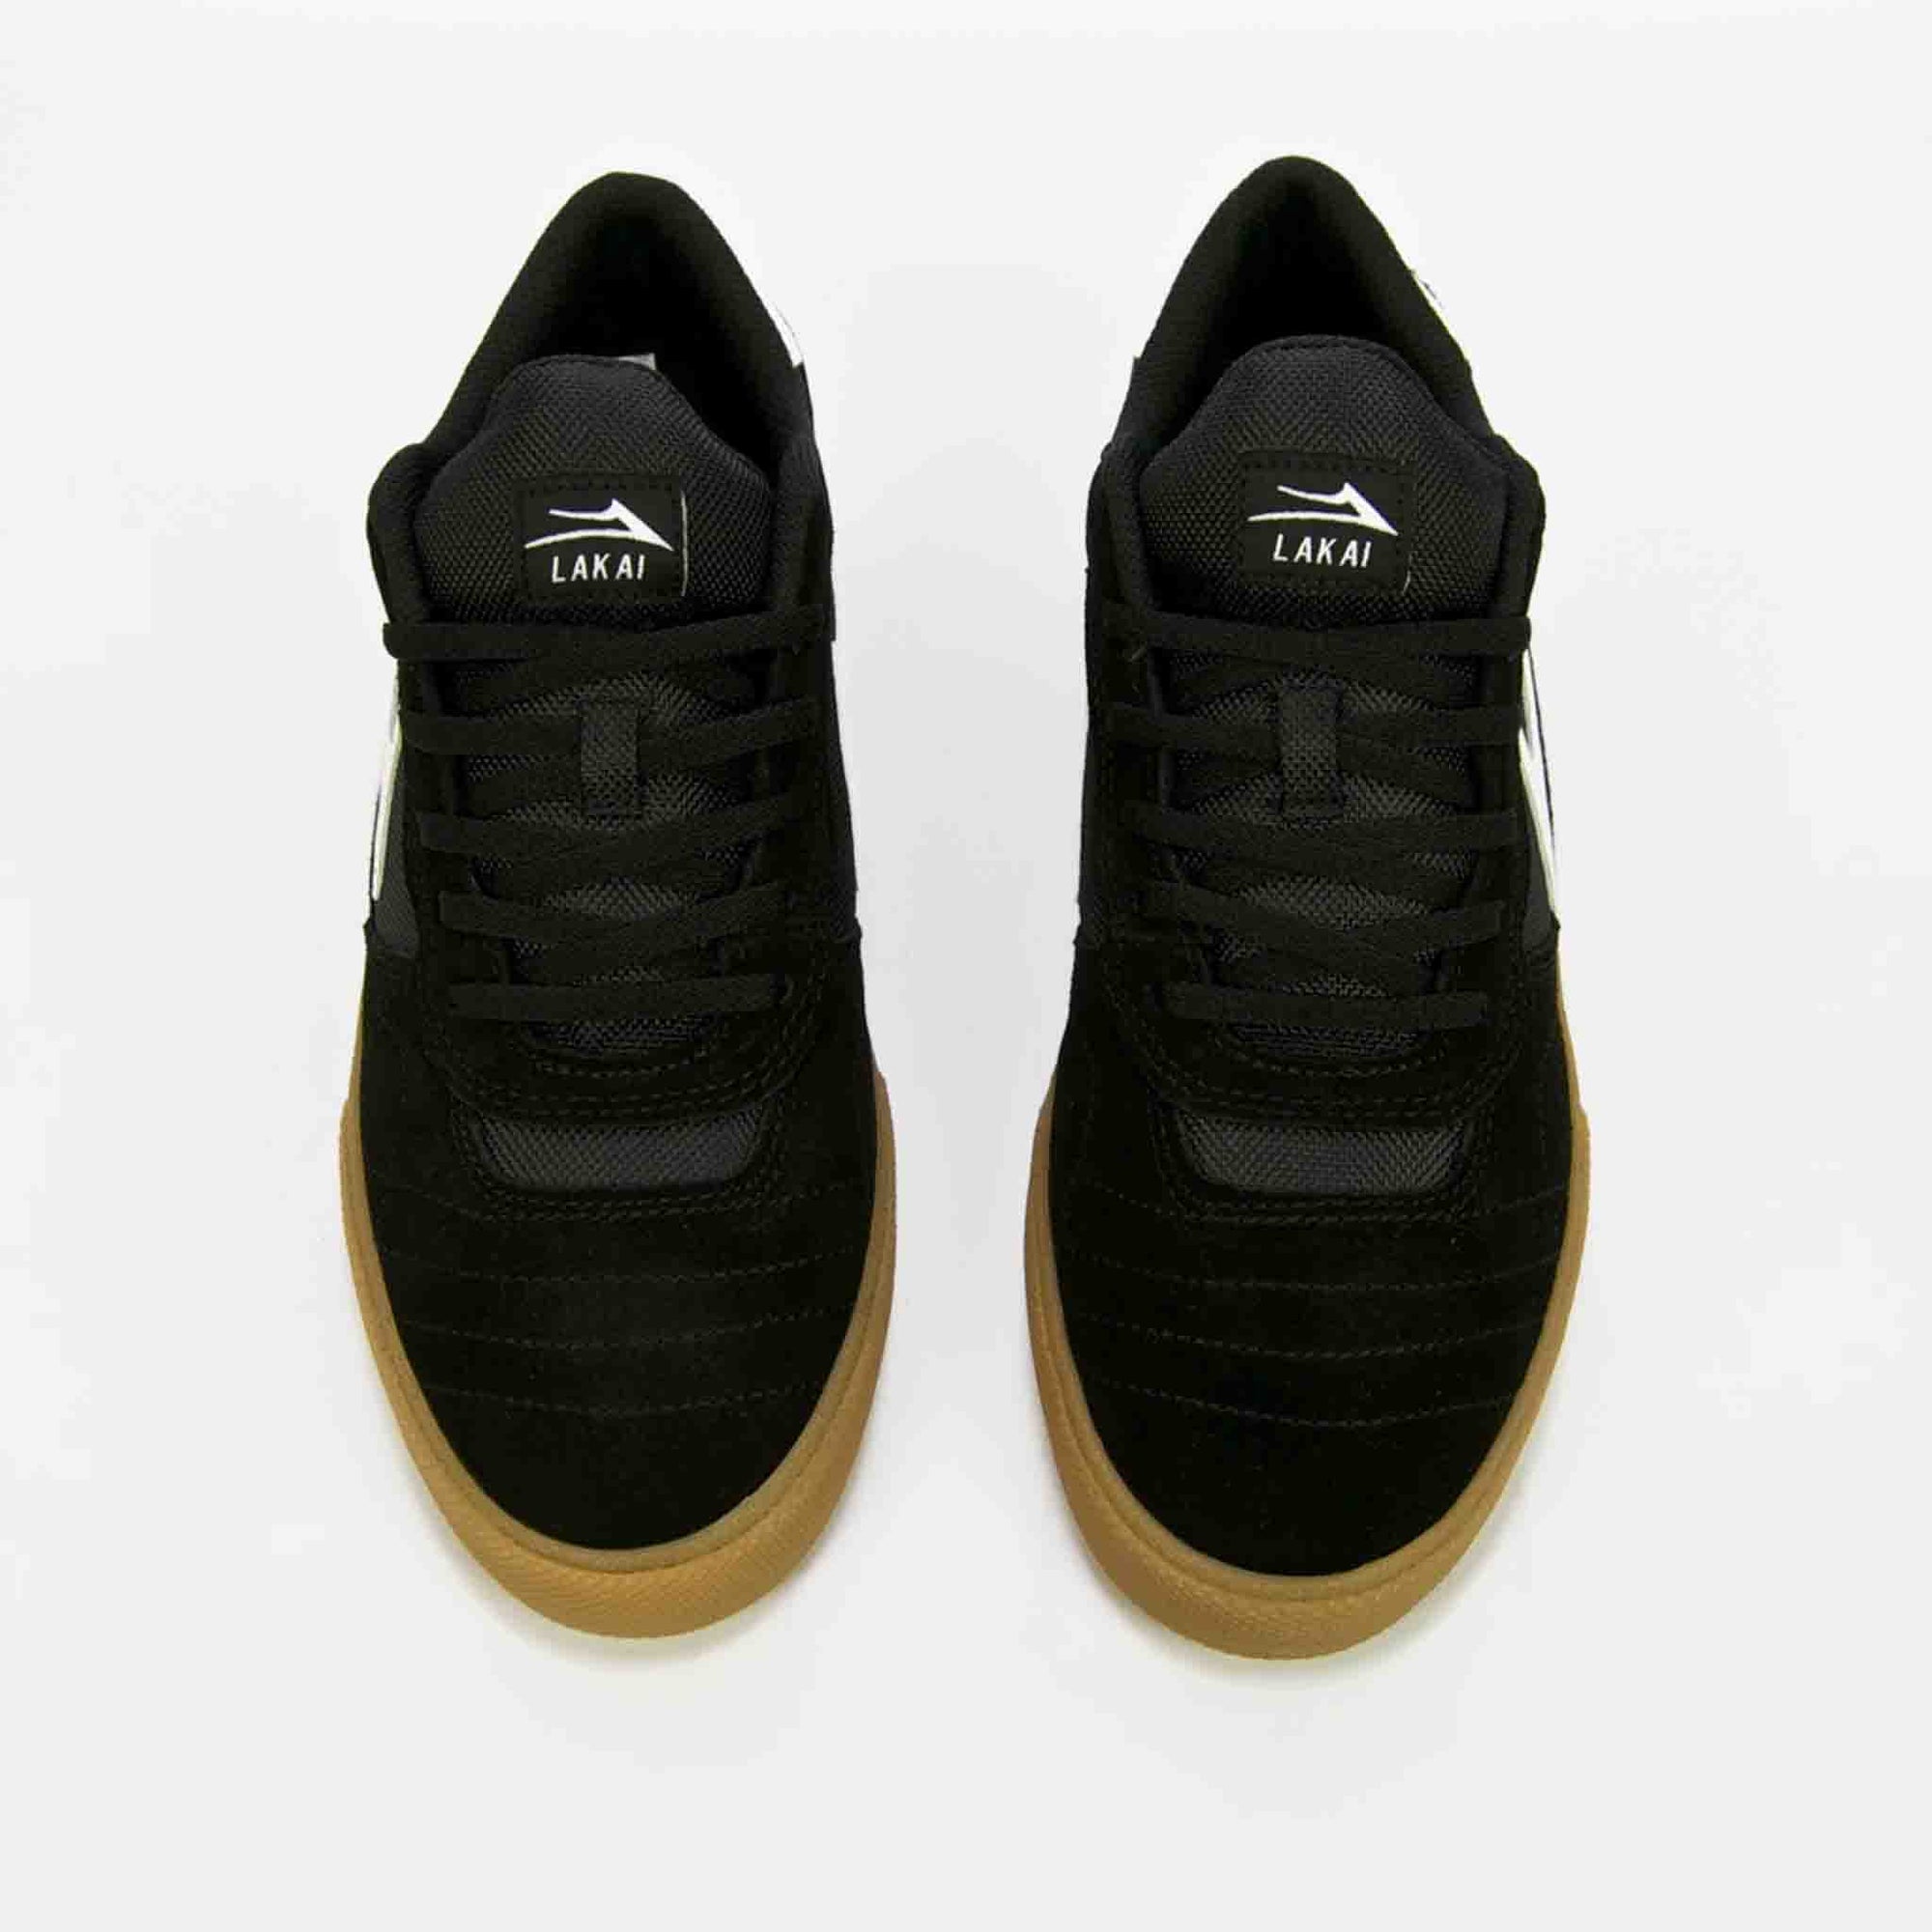 Lakai - Cambridge Shoes - Black / Gum